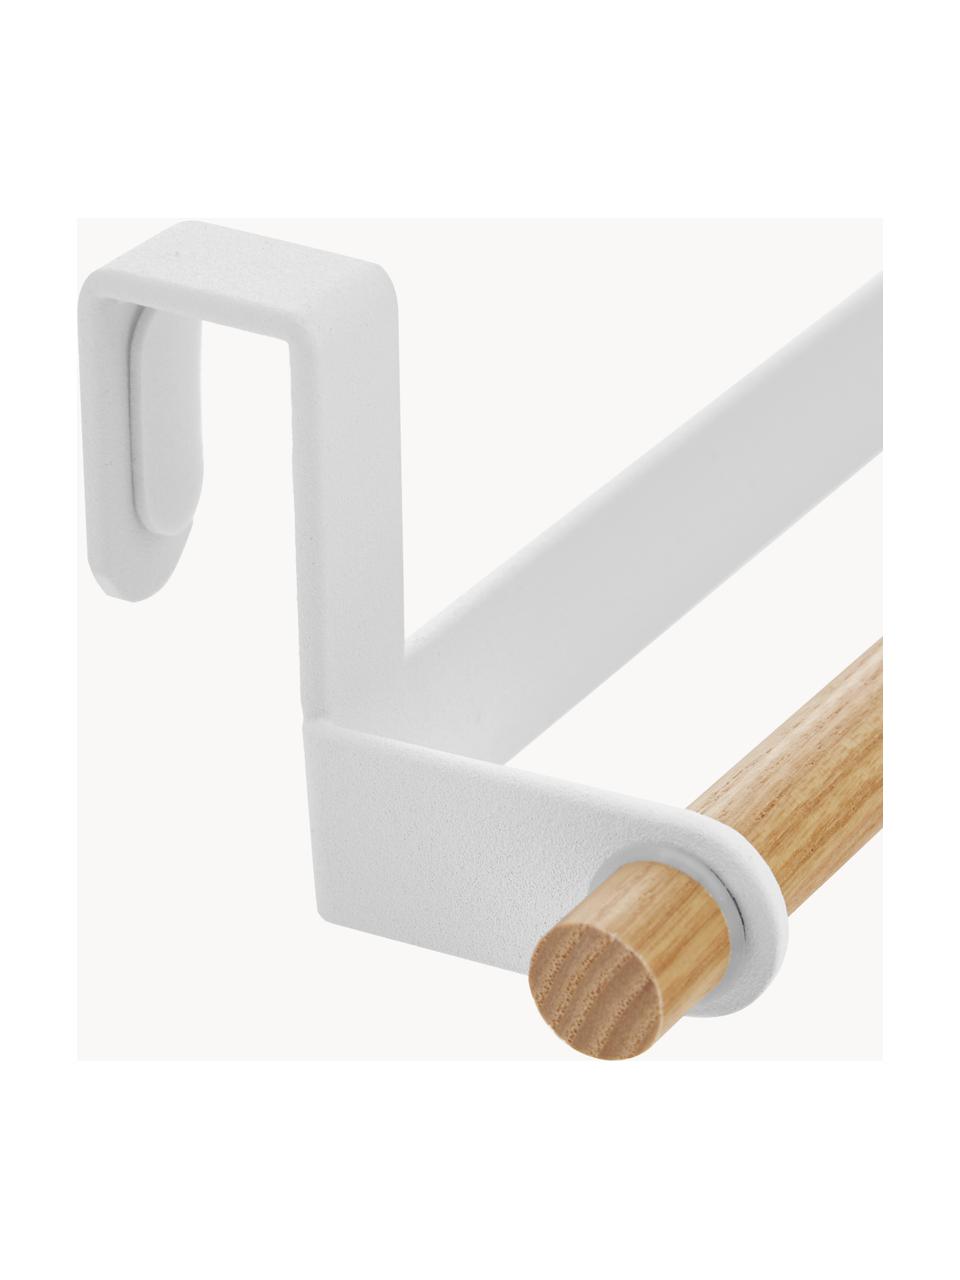 Porta asciugamani Tosca, Asta: acciaio rivestito, Asta: legno, Bianco, legno, Larg. 33 x Alt. 6 cm